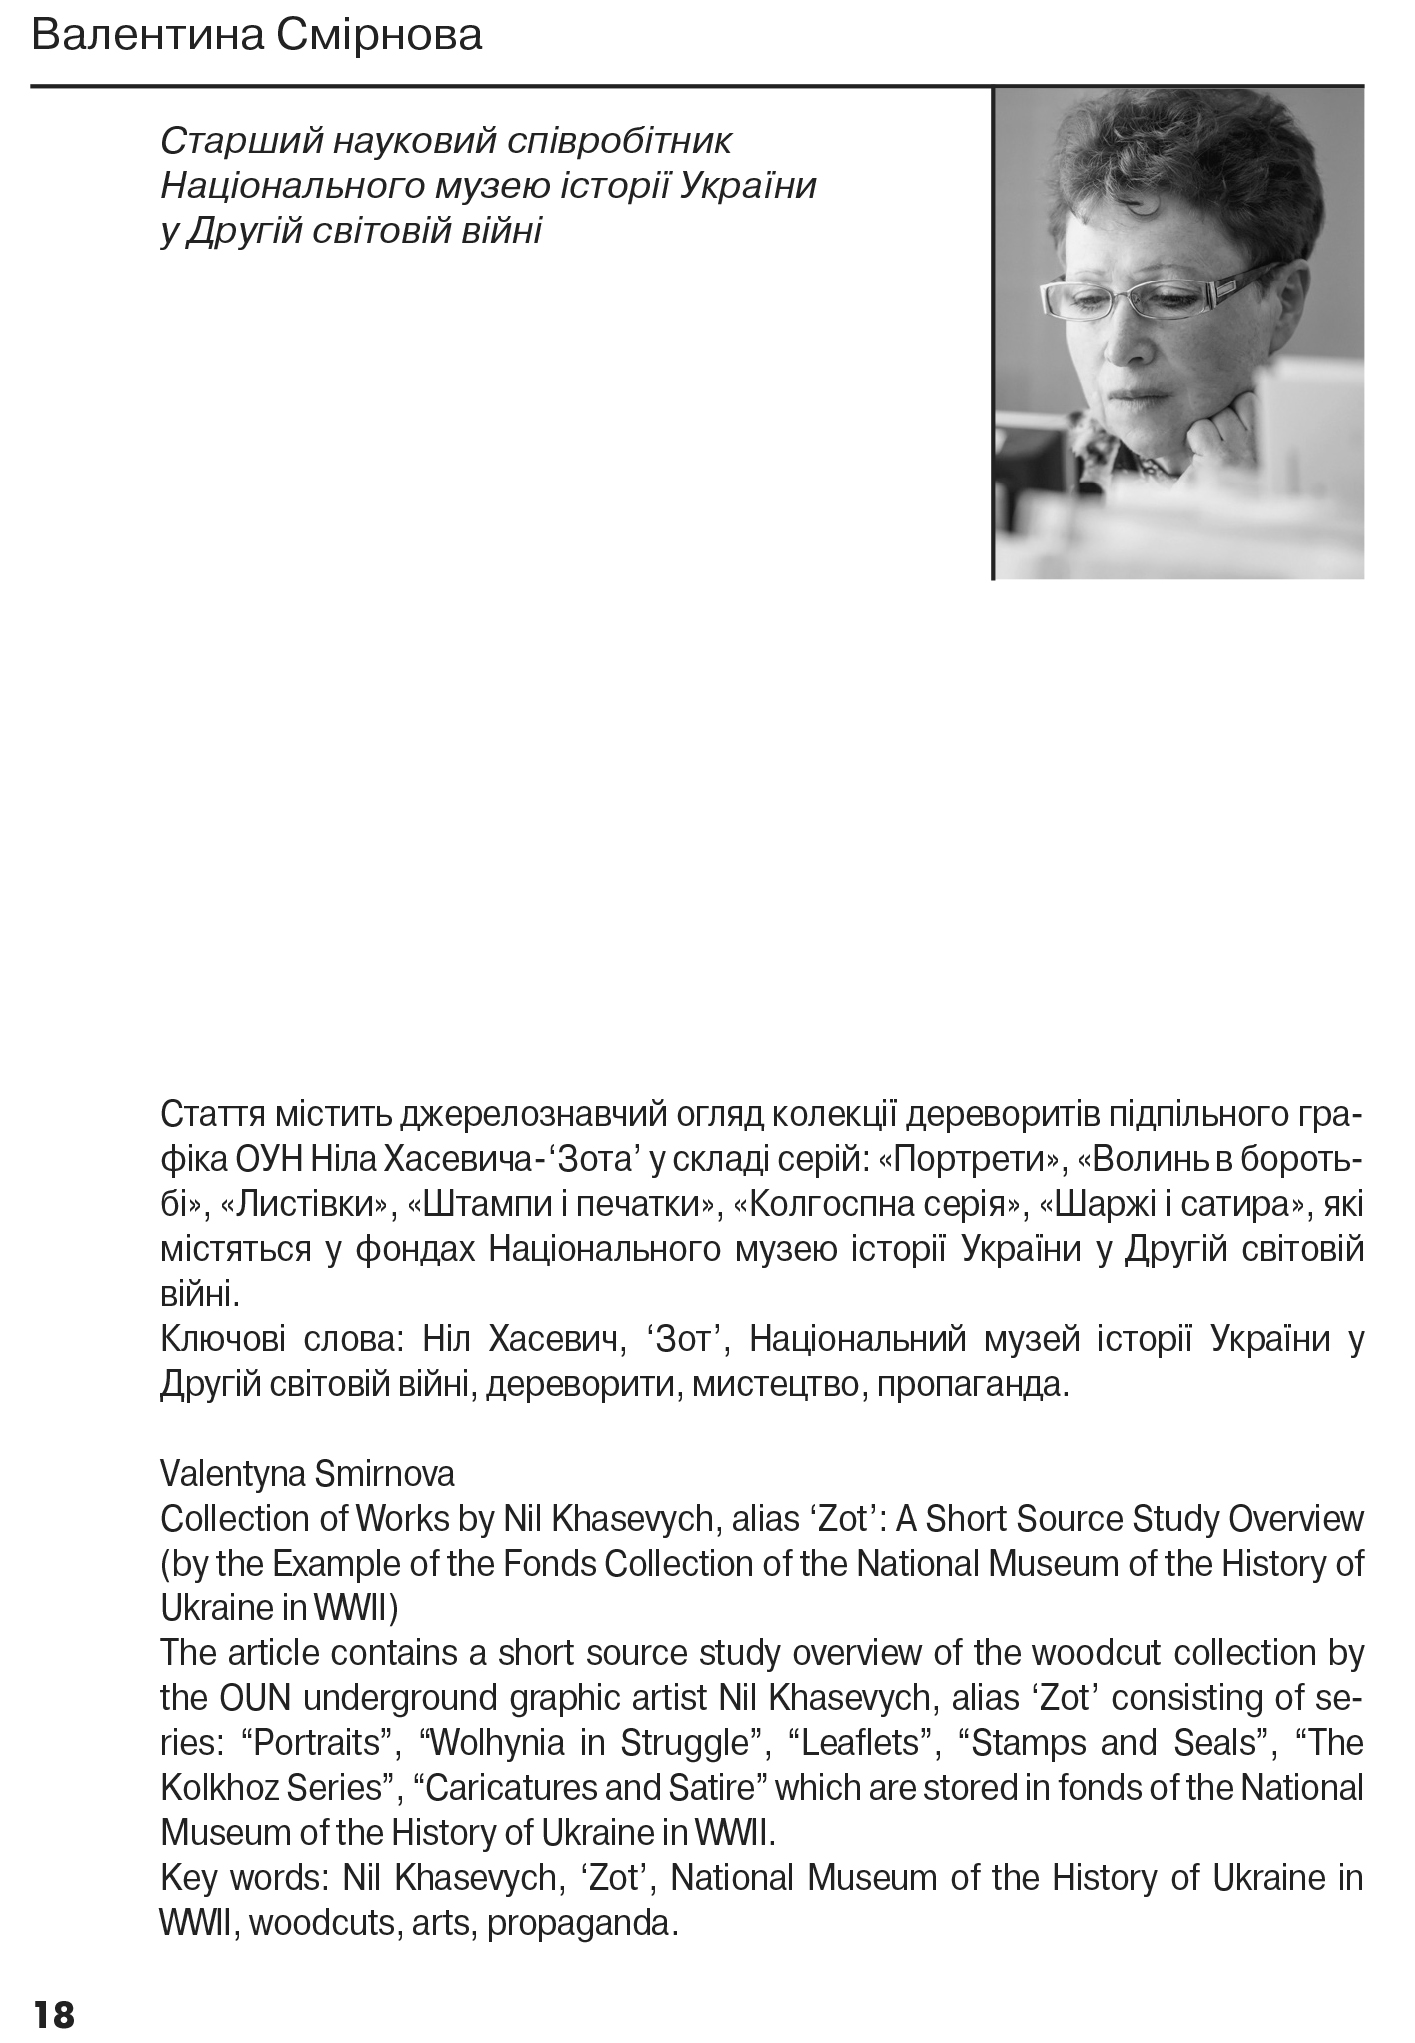 Український визвольний рух №22, ст. 18 - 25